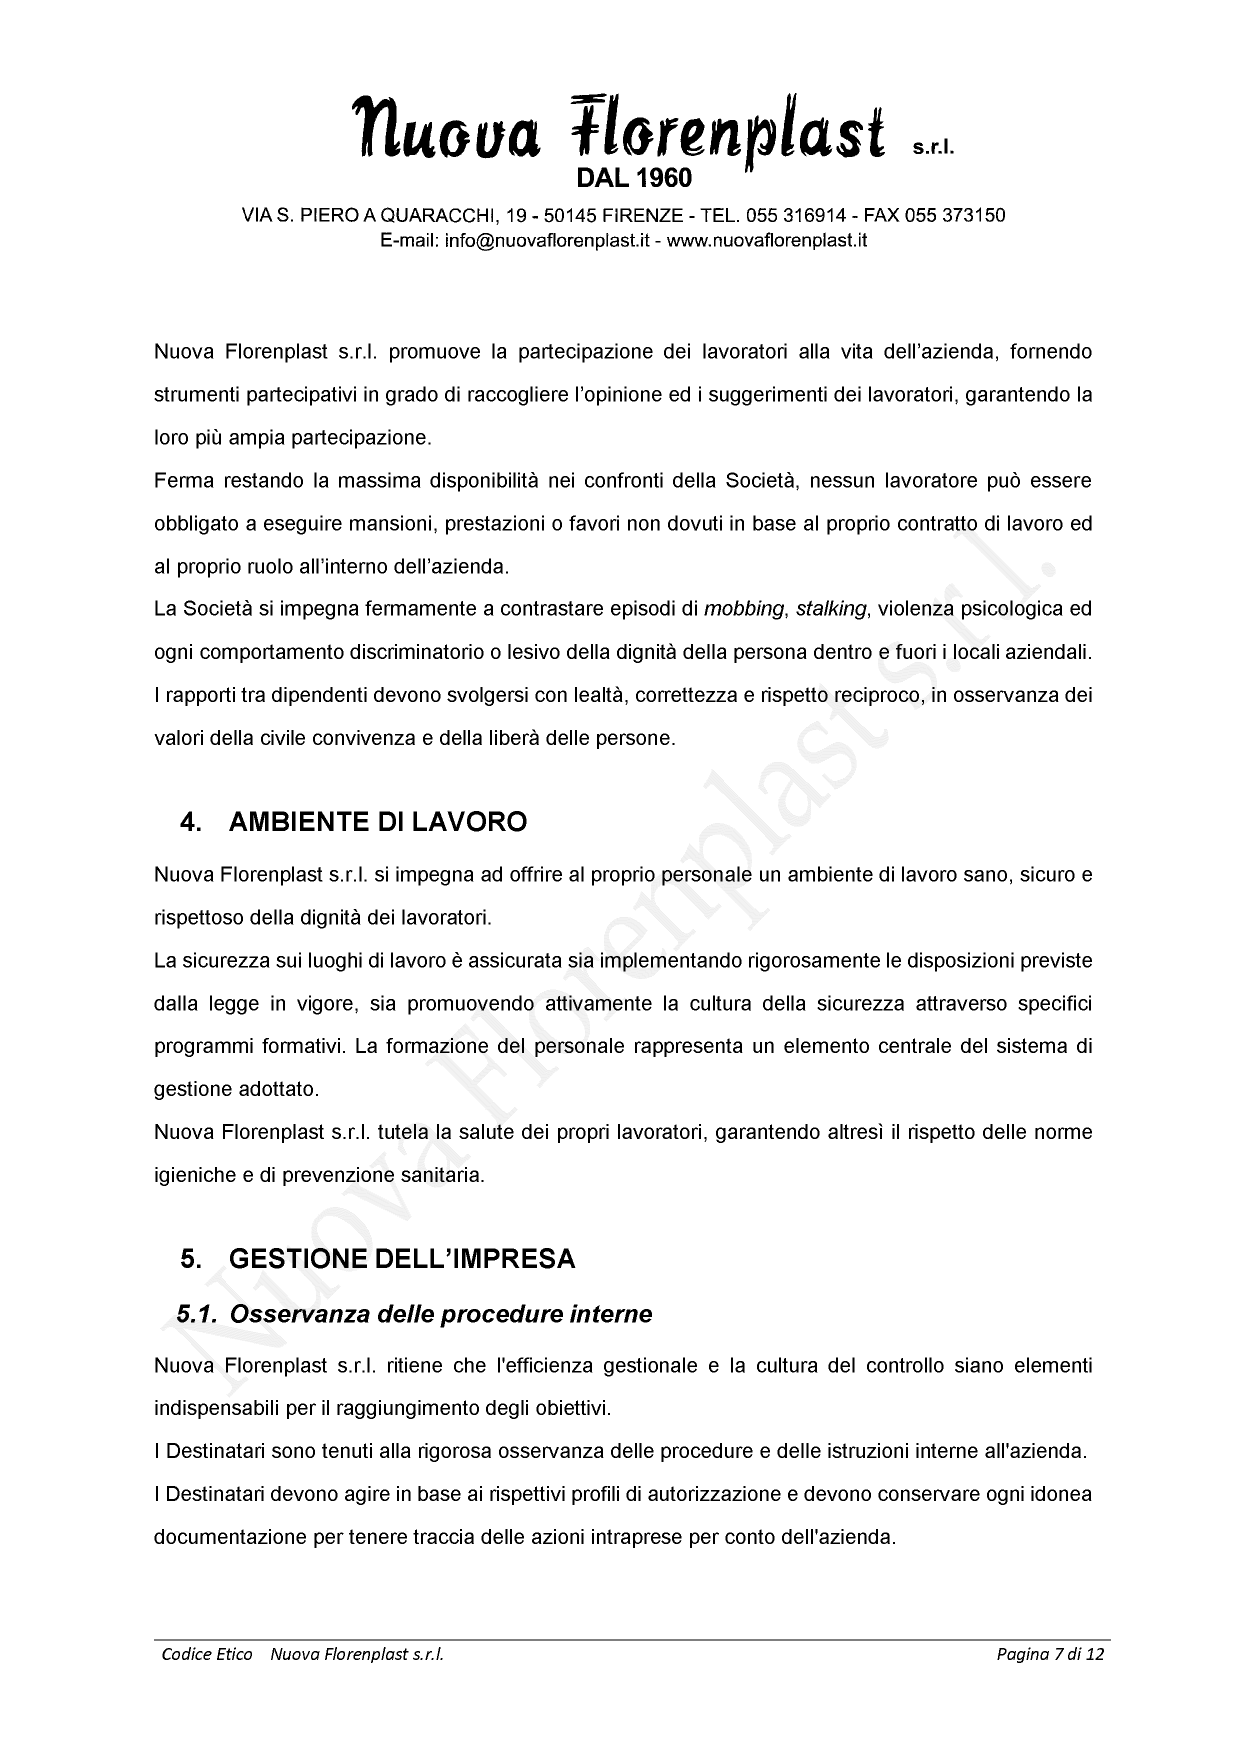 Codice Etico Nuova Florenplast